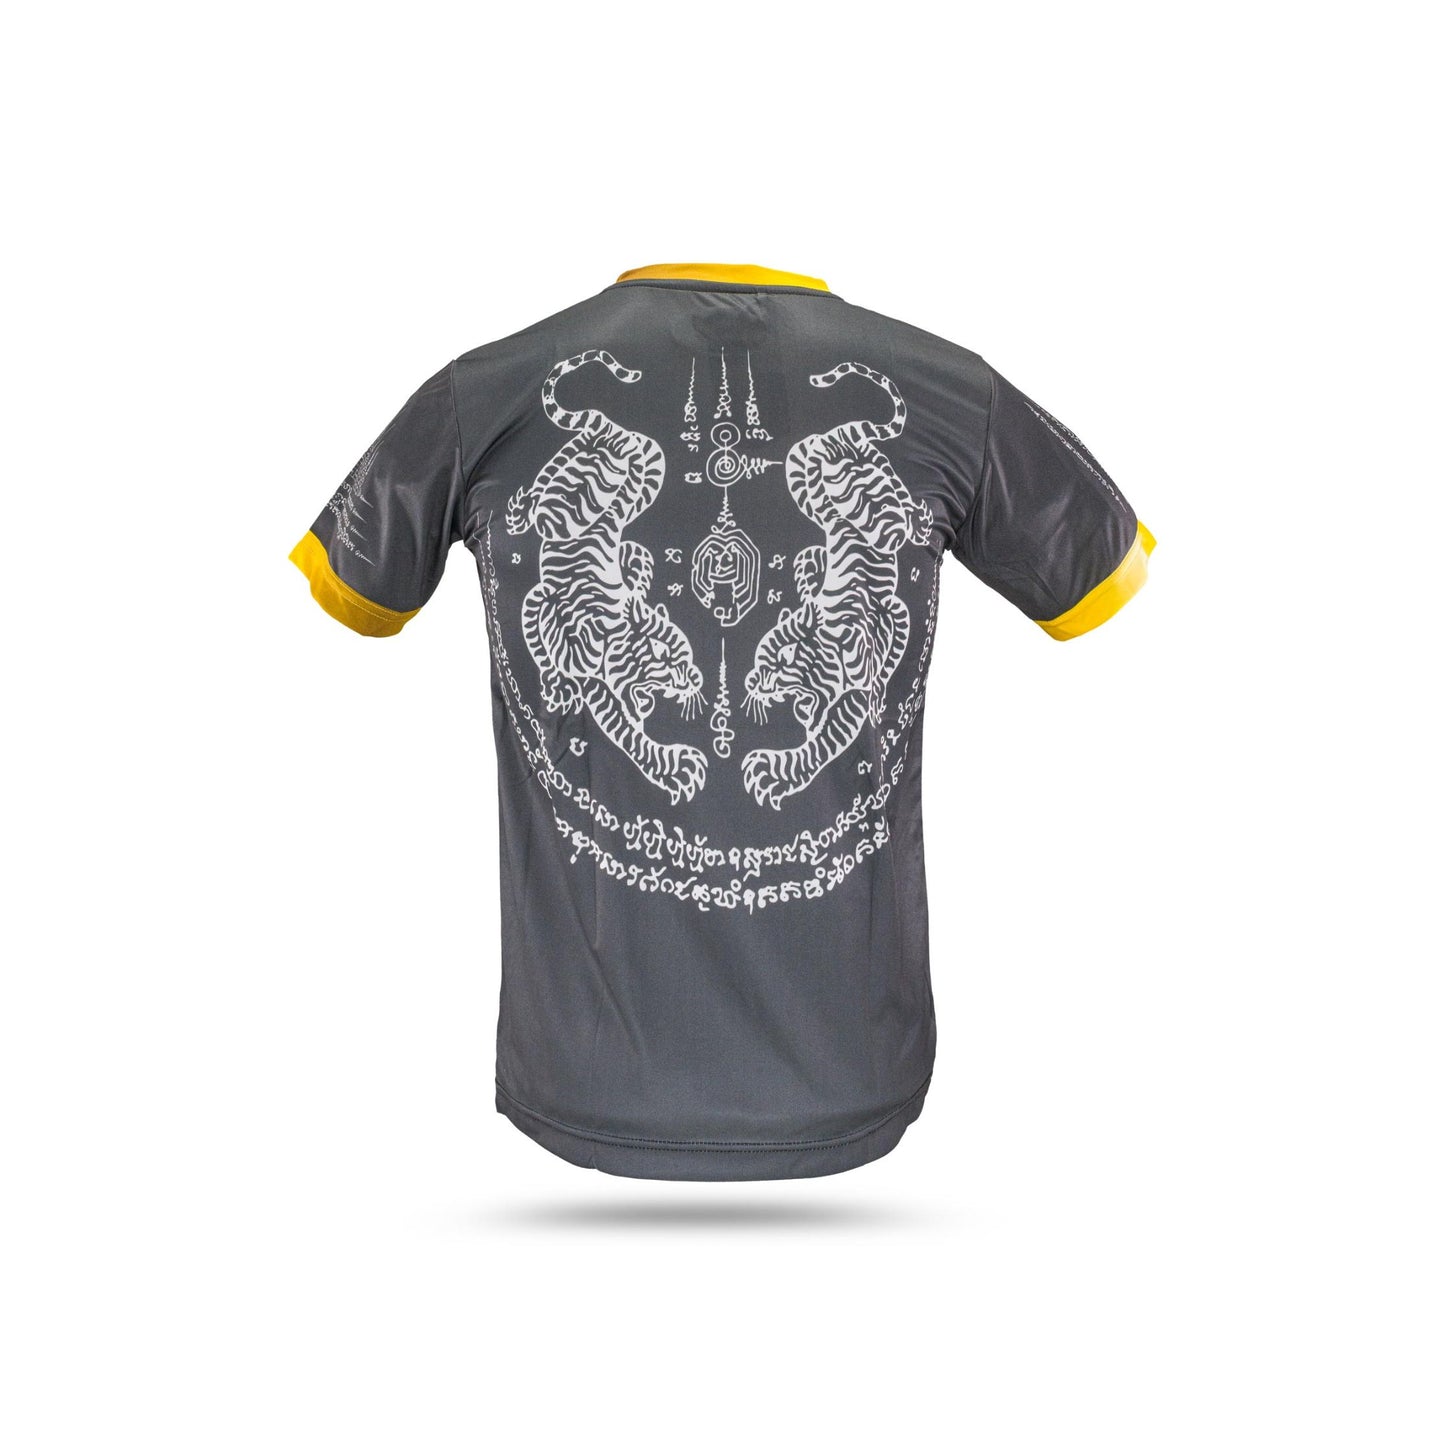 Blegend T-shirt Black Tiger